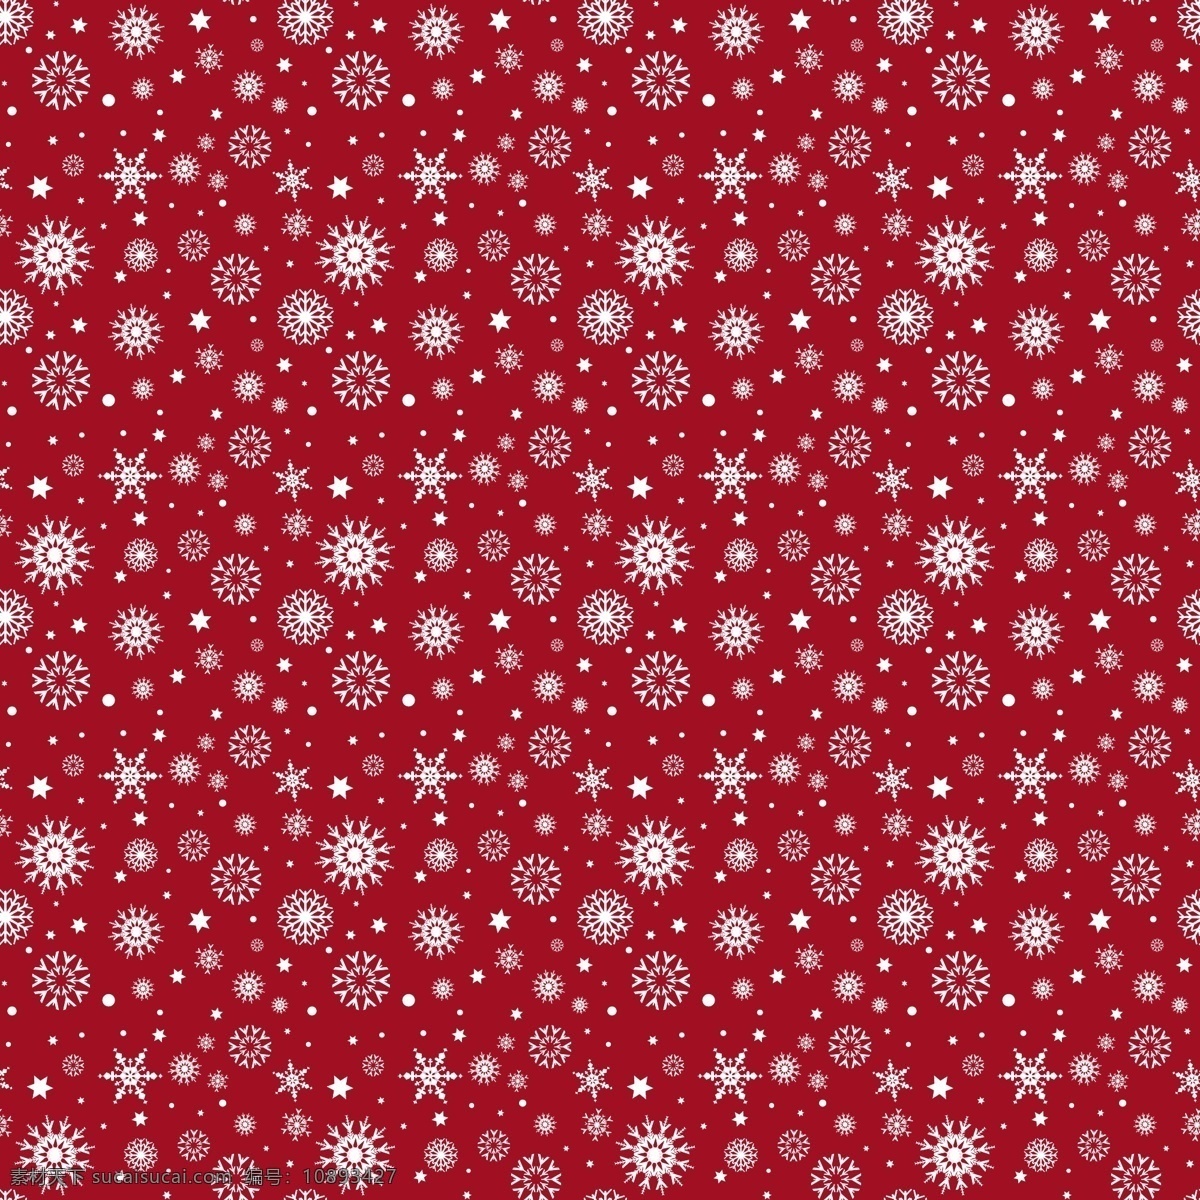 白色 雪花 红色 背景 图案 背景图案 圣诞节 抽象 几何 雪 圣诞快乐 冬天快乐 星星 圣诞背景 红色背景 庆典 假日 白色背景